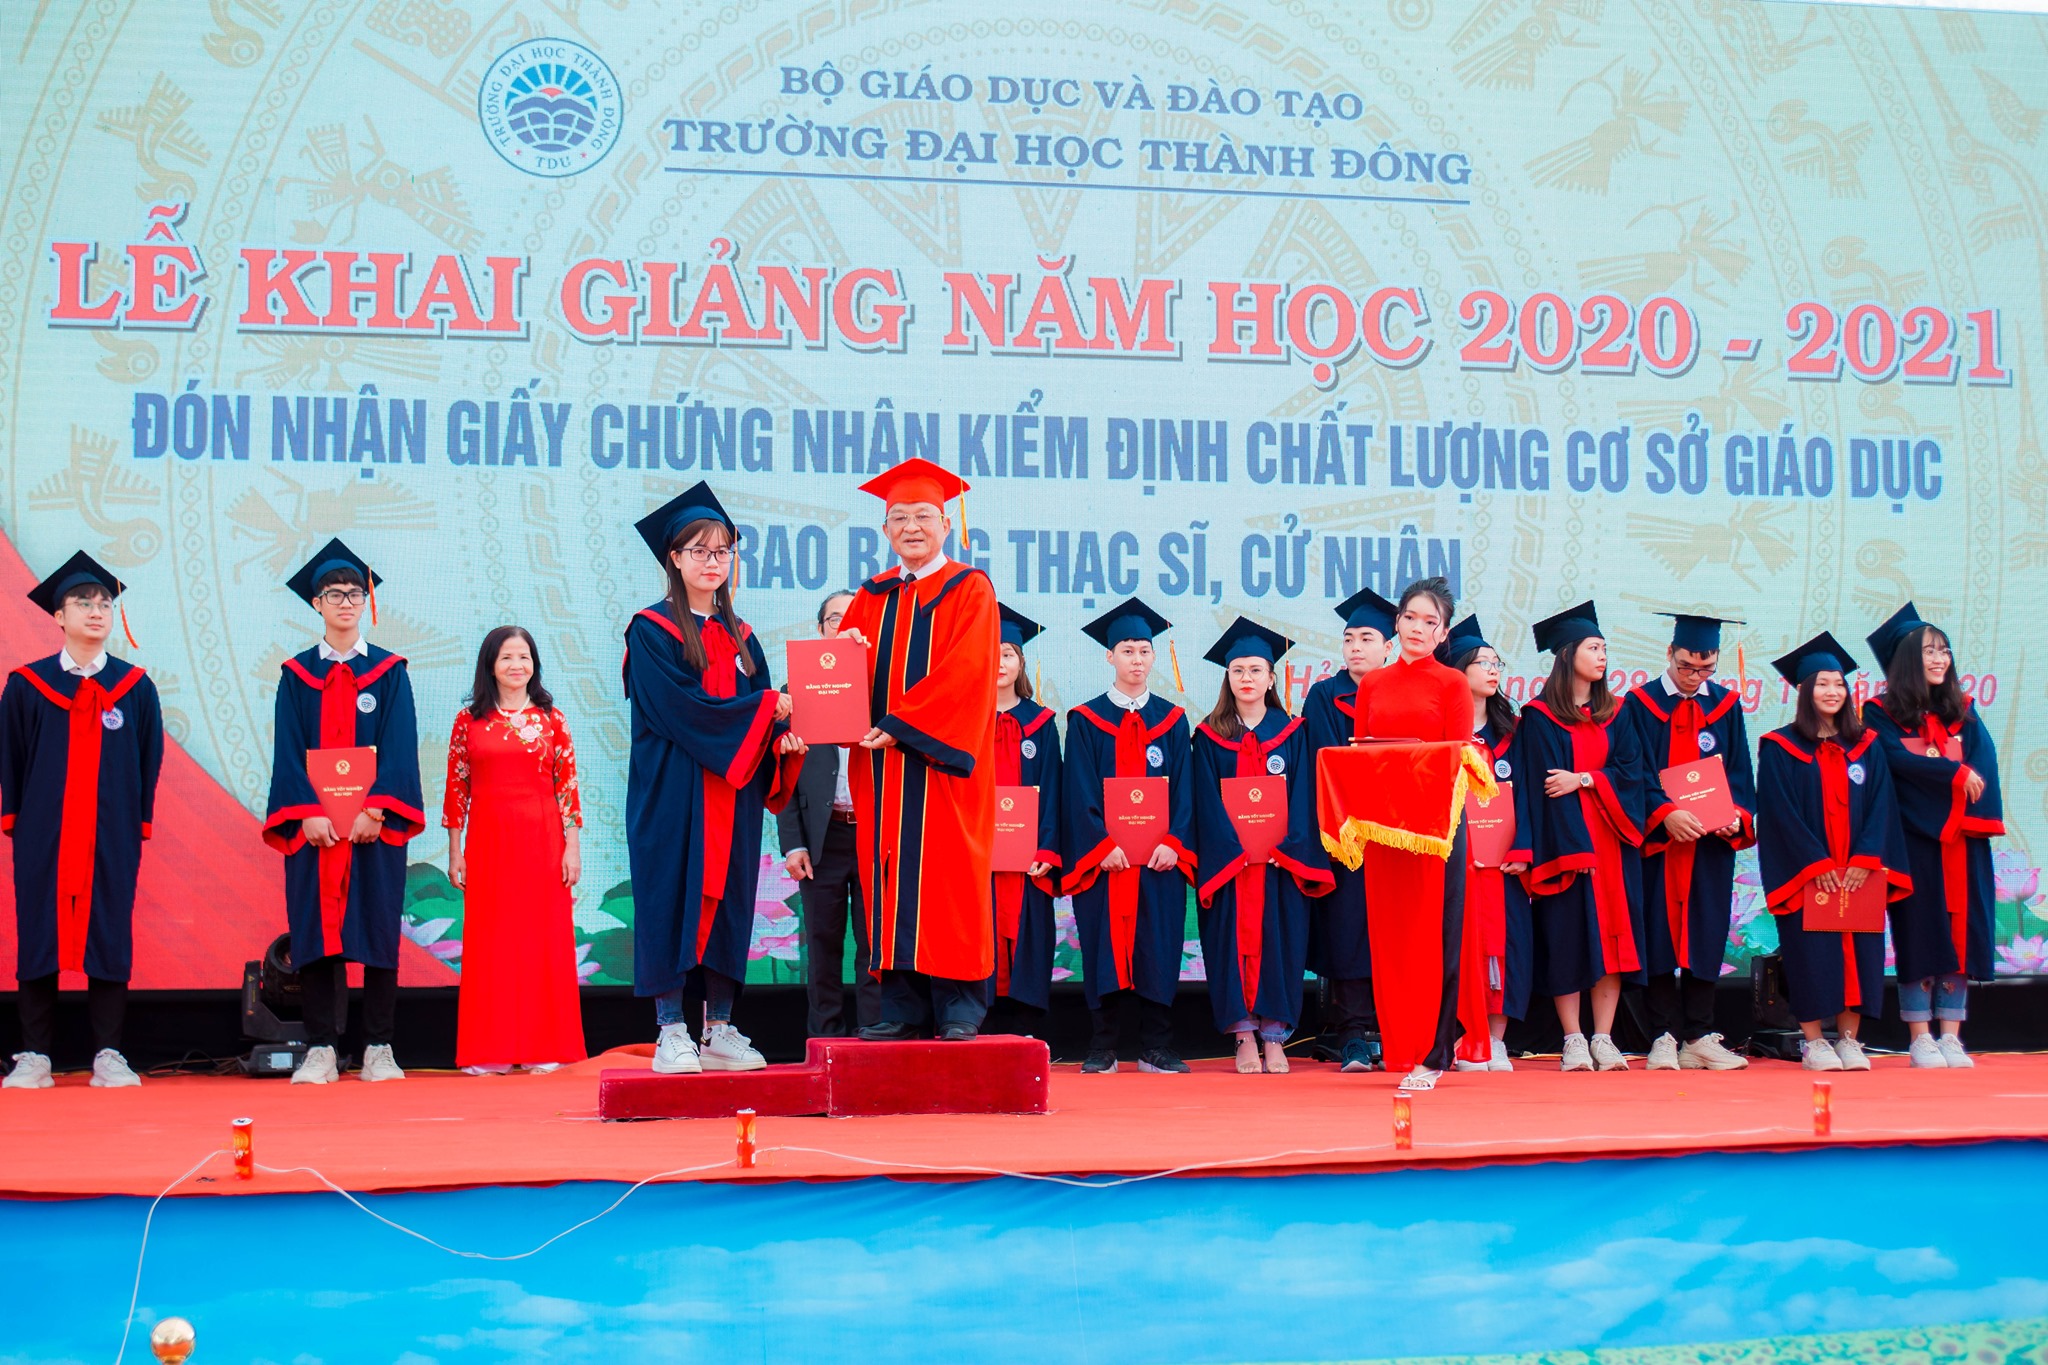 Đào tạo từ xa – Đại học Thành Đông 2023